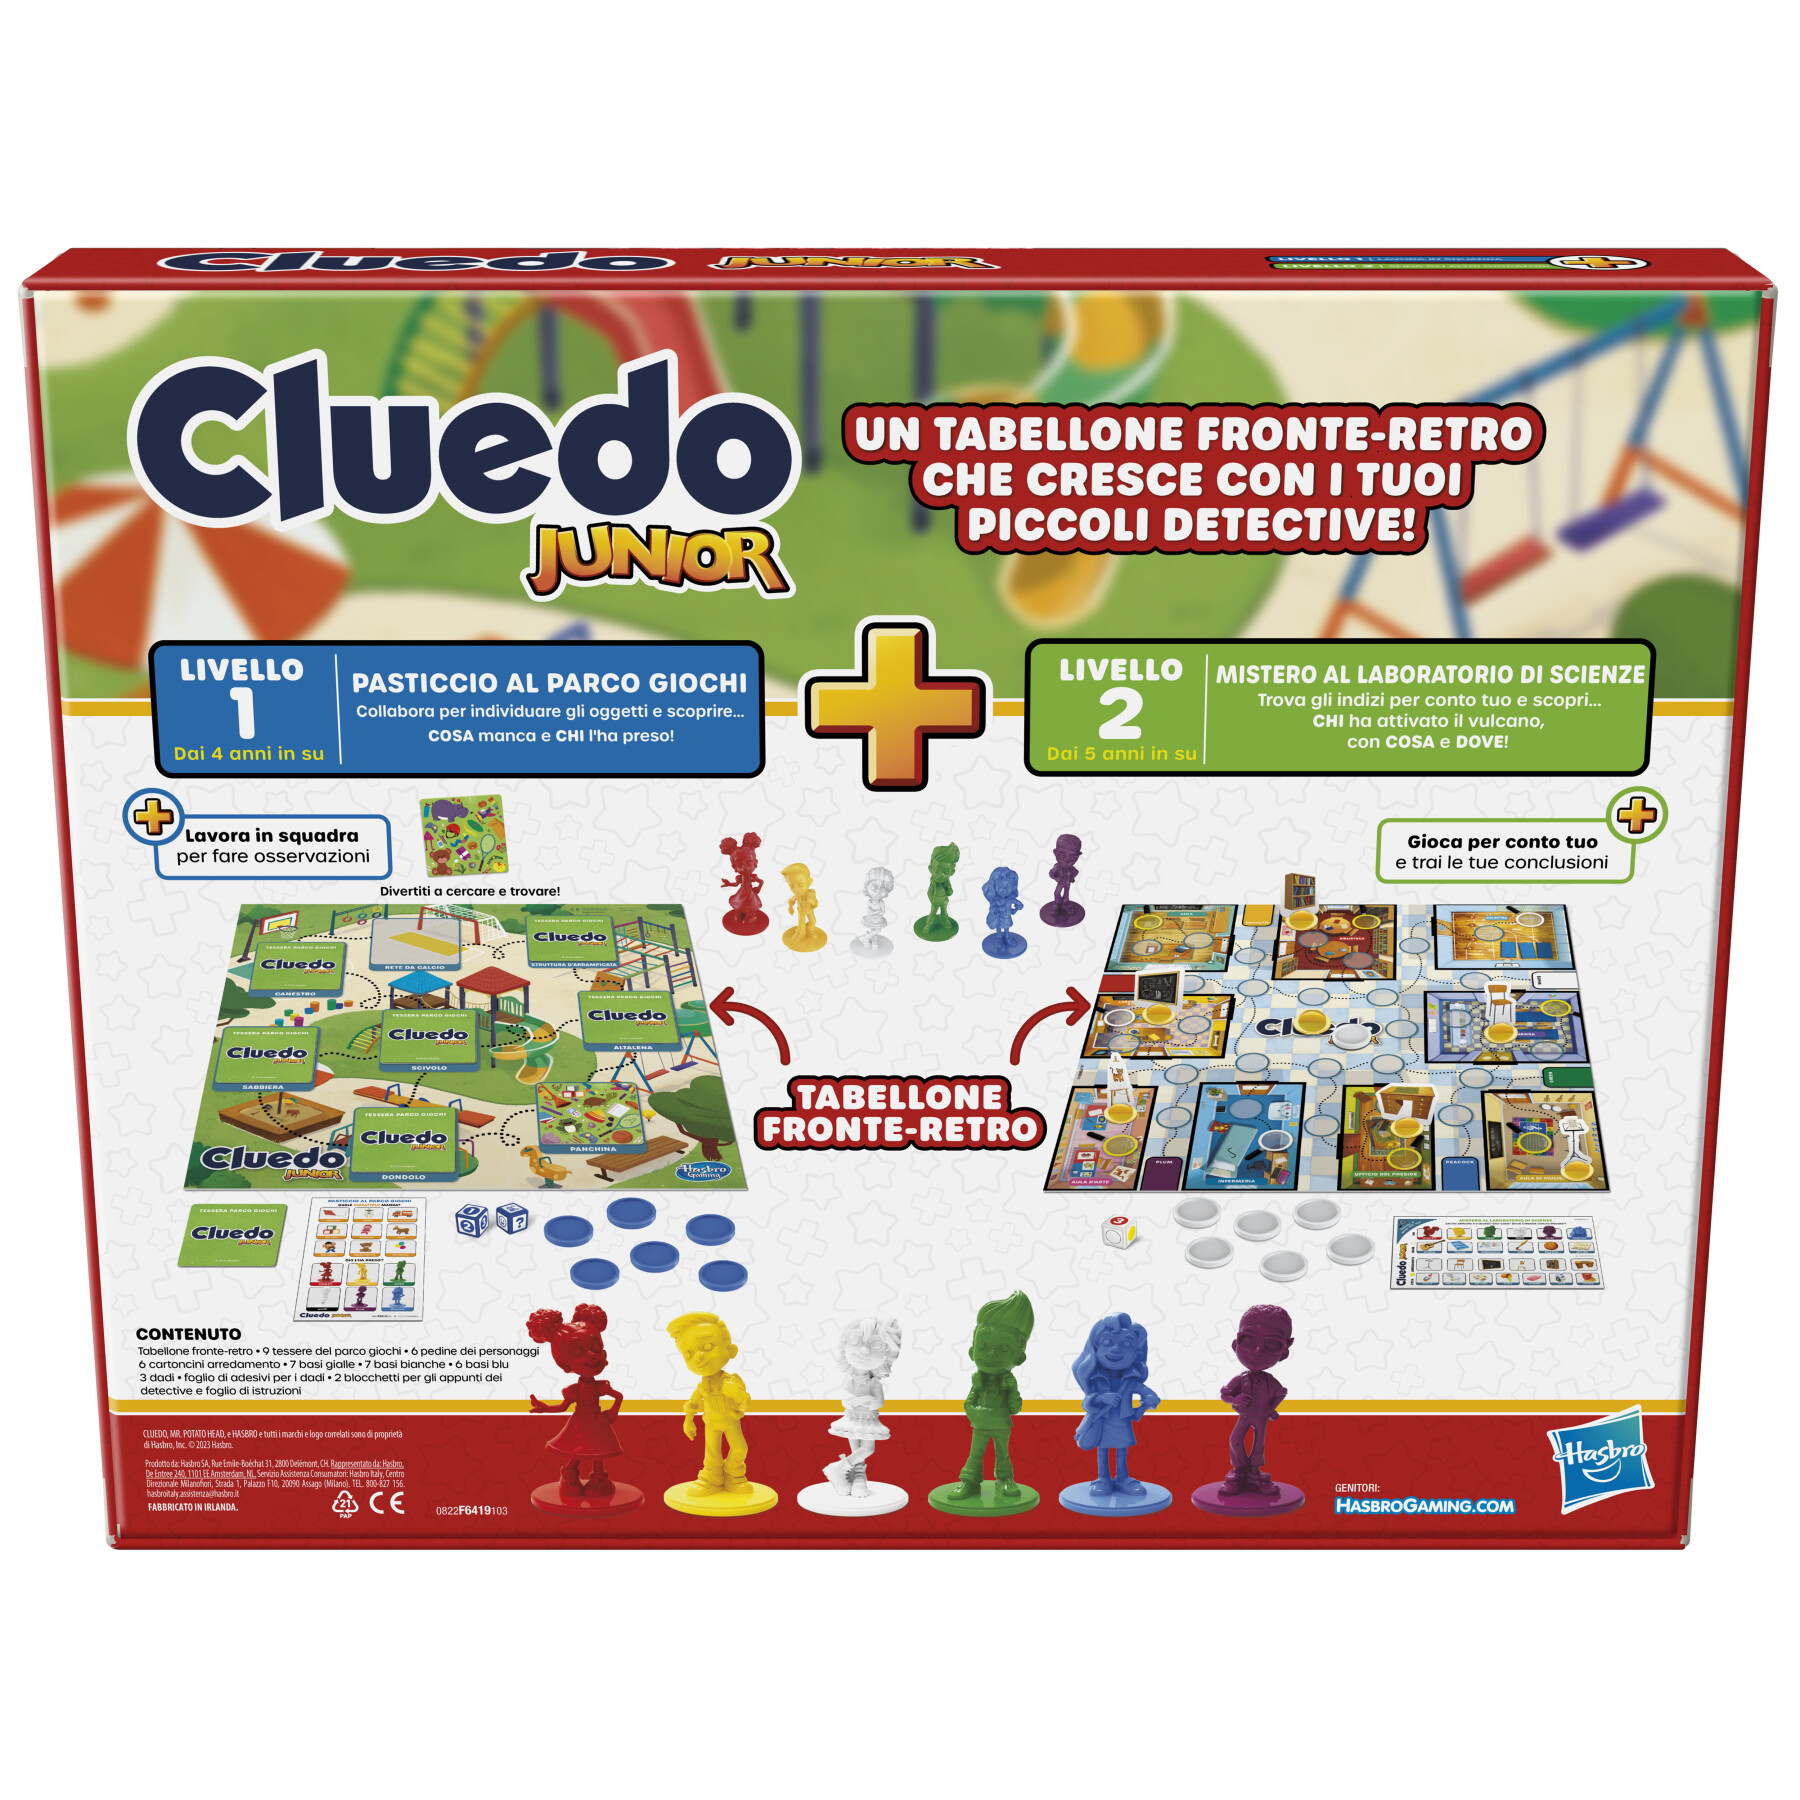 Cluedo junior, gioco in scatola hasbro gaming, tabellone fronte-retro, 2 giochi in 1, gioco di mistero per bambini e bambine più piccoli, giochi da tavolo per bambini e bambine - HASBRO GAMING